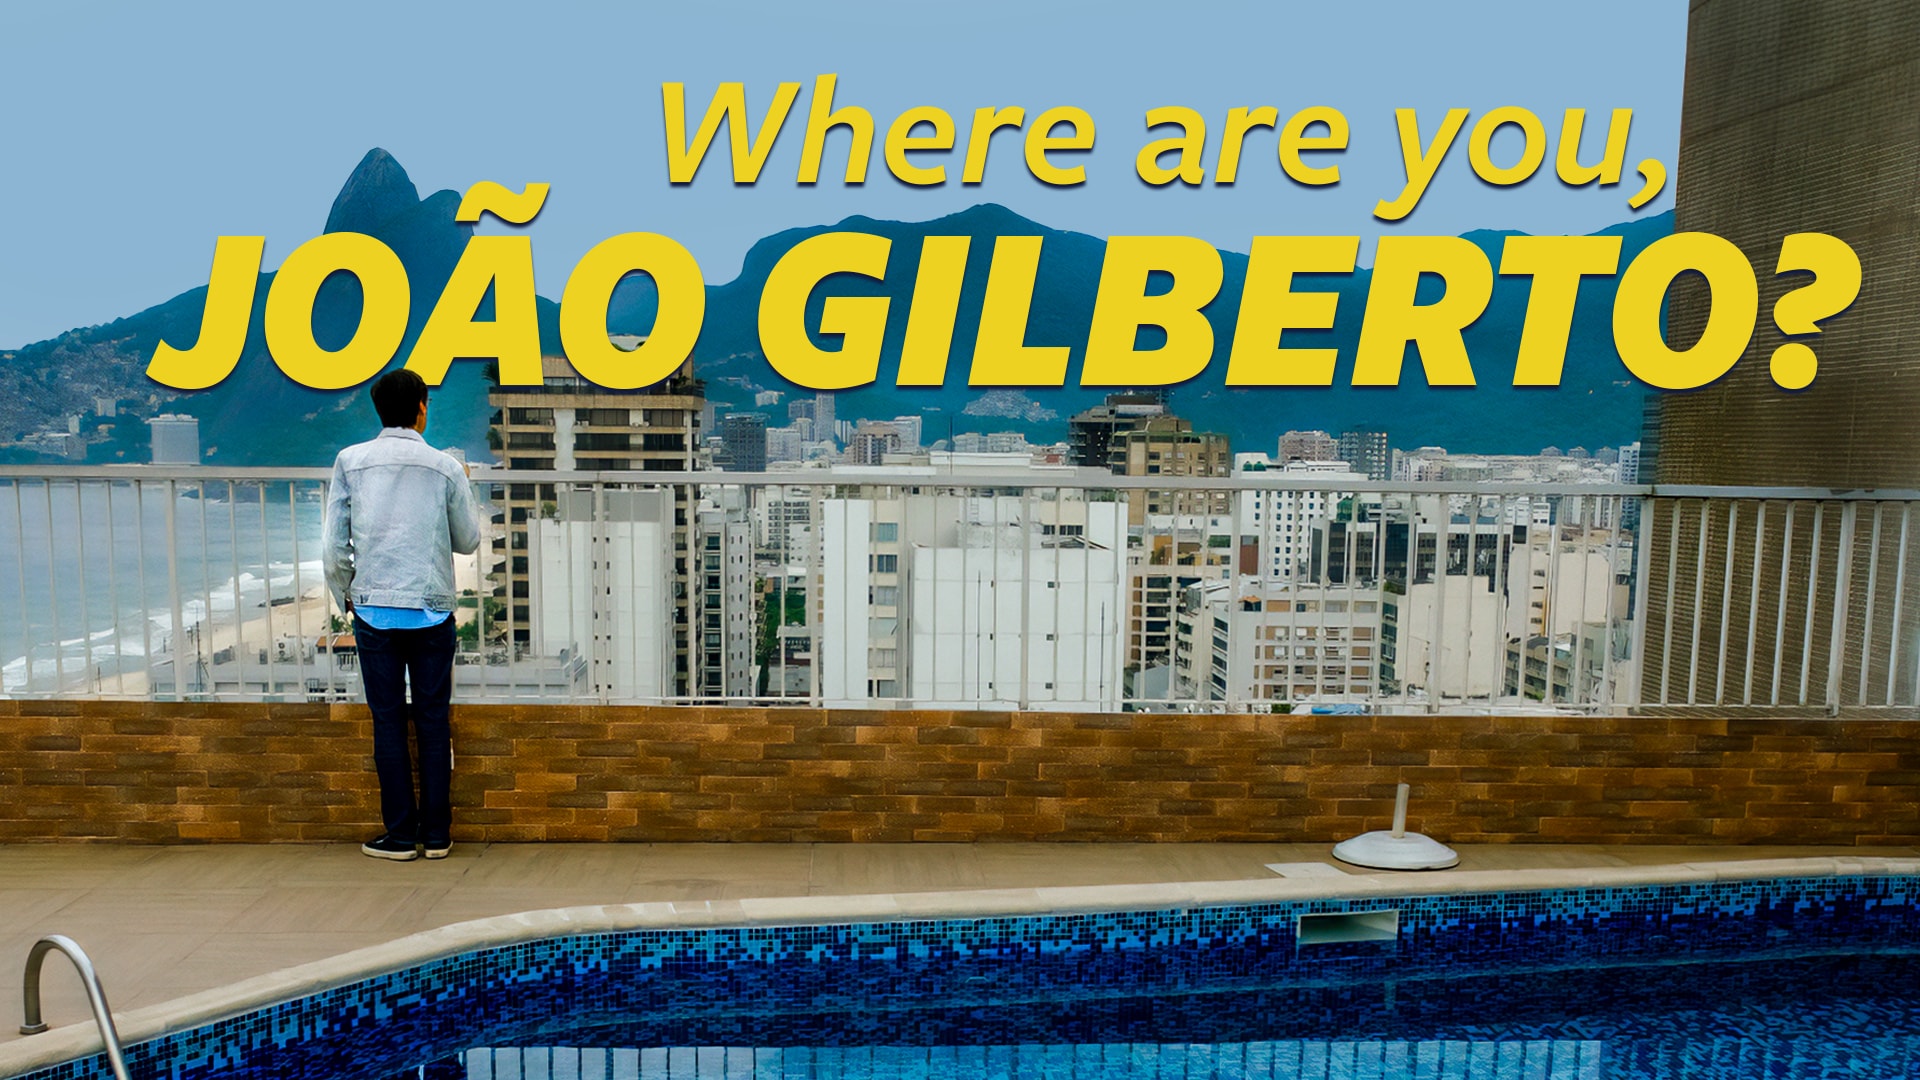 Where are you, João Gilberto?